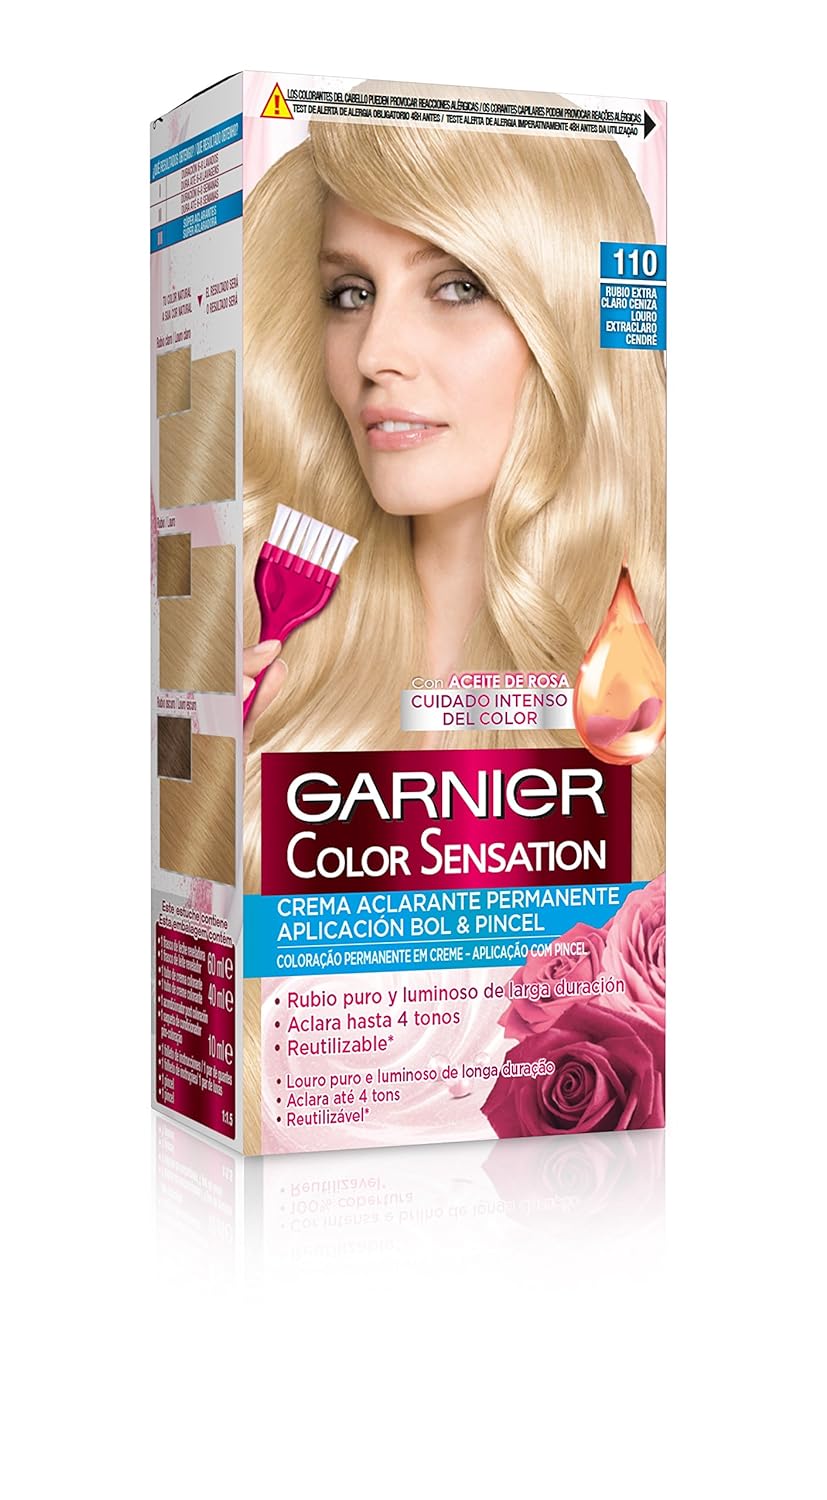 Garnier Color Sensation nº110 Rubio Extra Claro